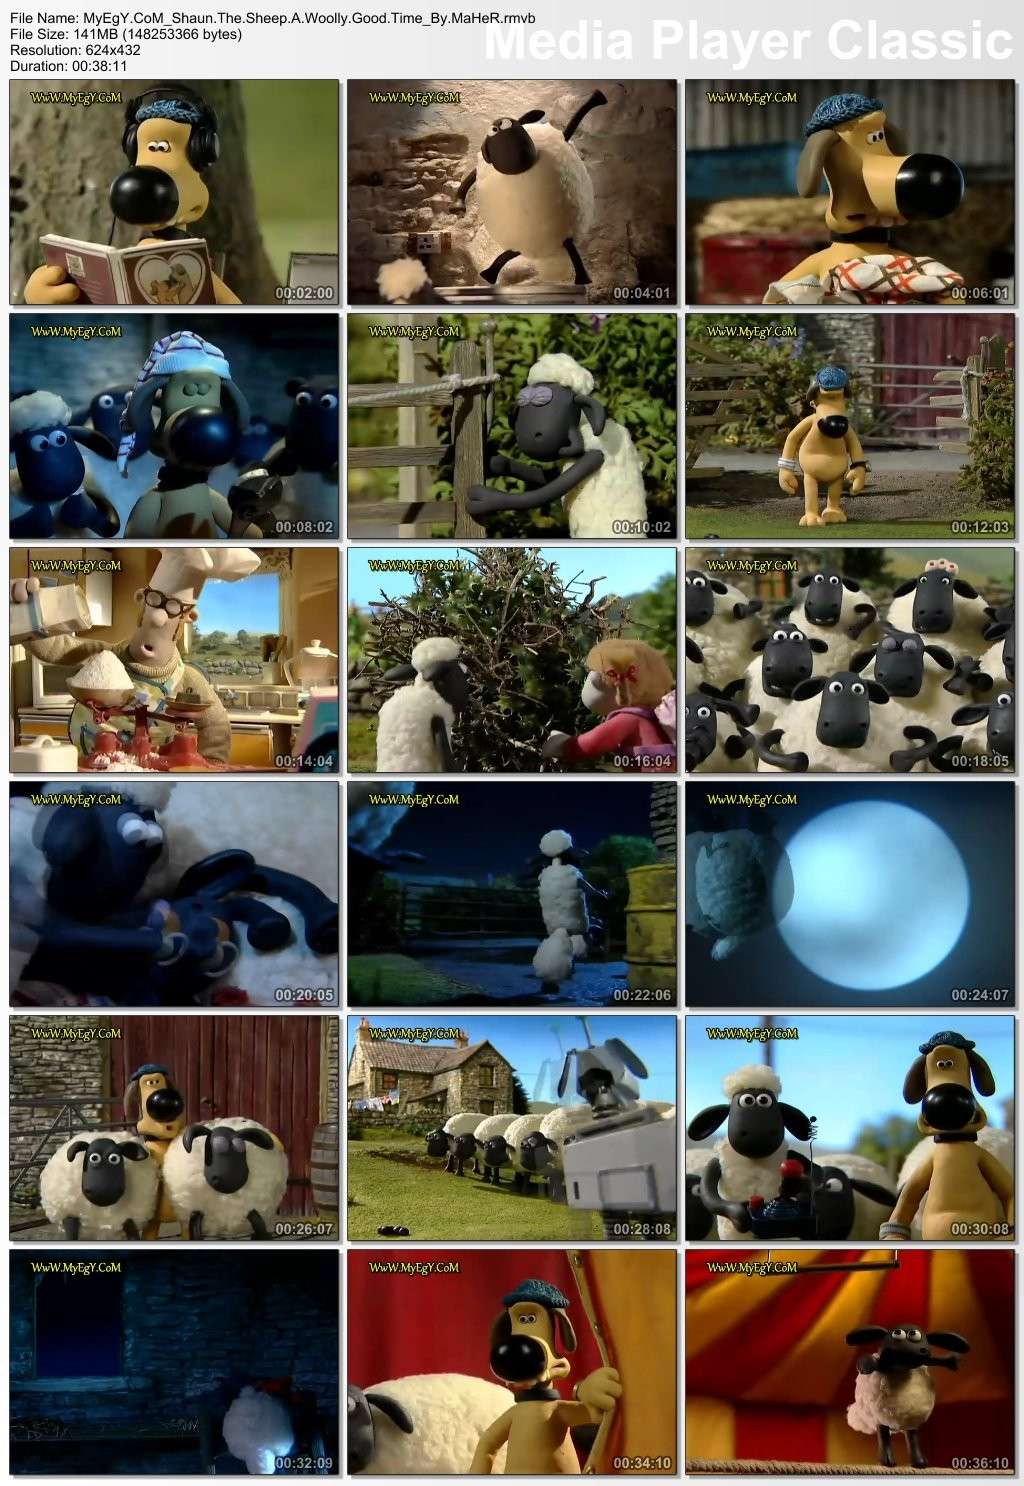 حصريا مع الانمي الرائع Shaun The Sheep : A Woolly Good Time 2010 بجودة DvDRip و بحجم 141 ميجا على الميجا إبلود Uuuuuu10